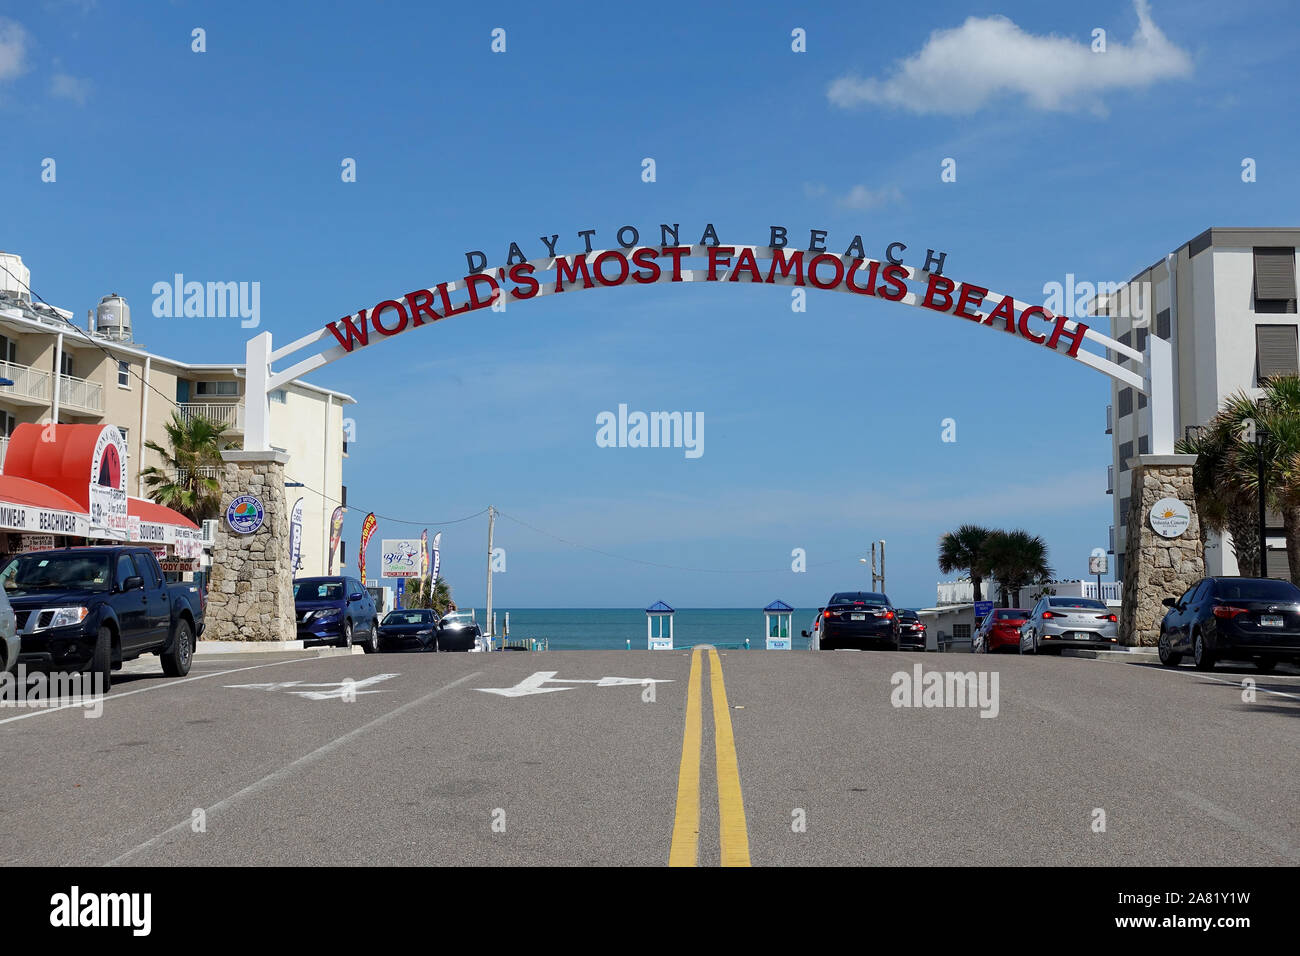 Daytona Beach Zeichen' Welten die meisten berühmten Strand" an der Zufahrtsrampe zu fahren Am Strand Stockfoto